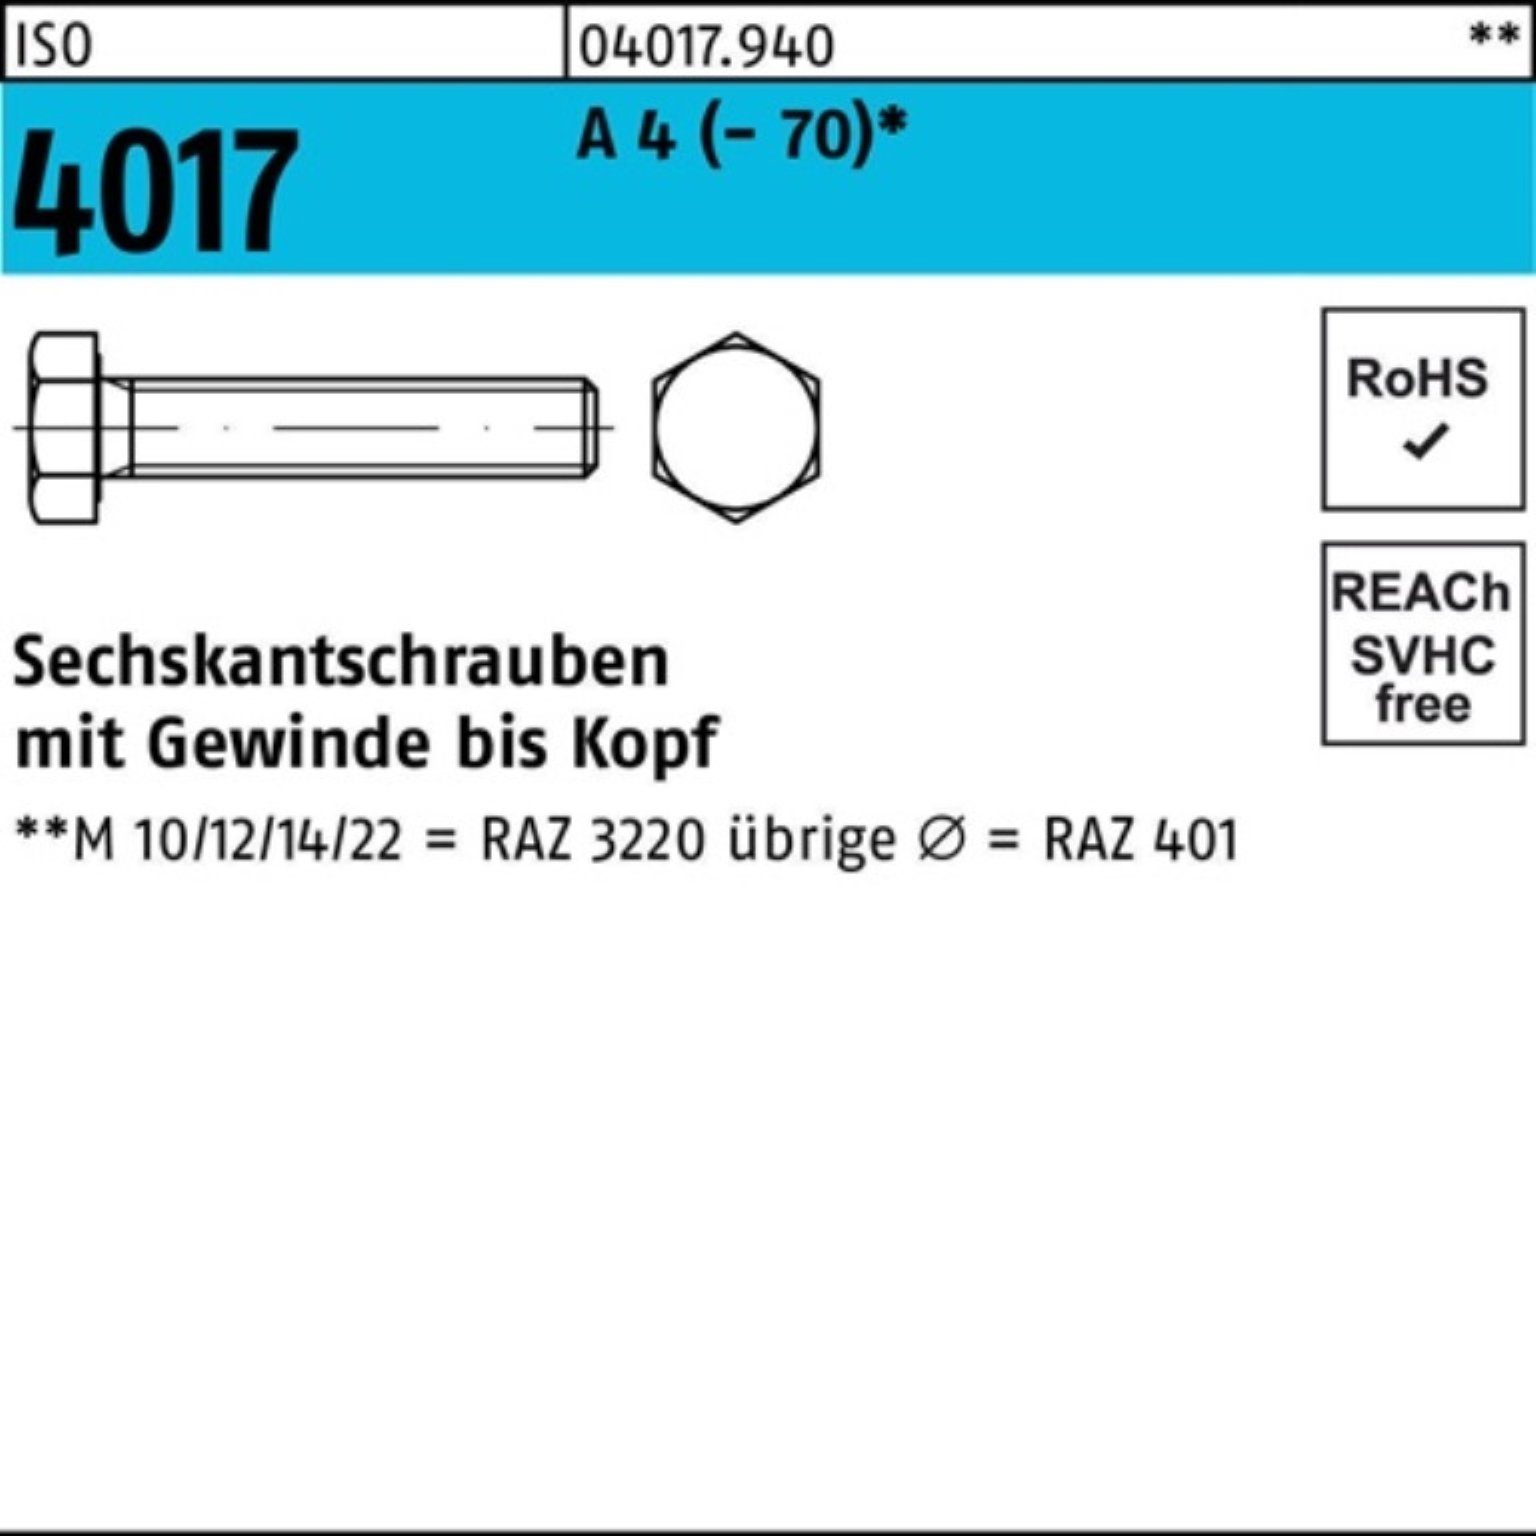 ISO Bufab A Sechskantschraube VG Sechskantschraube 4 120 Pack 100er M27x 4017 1 Stück (70)